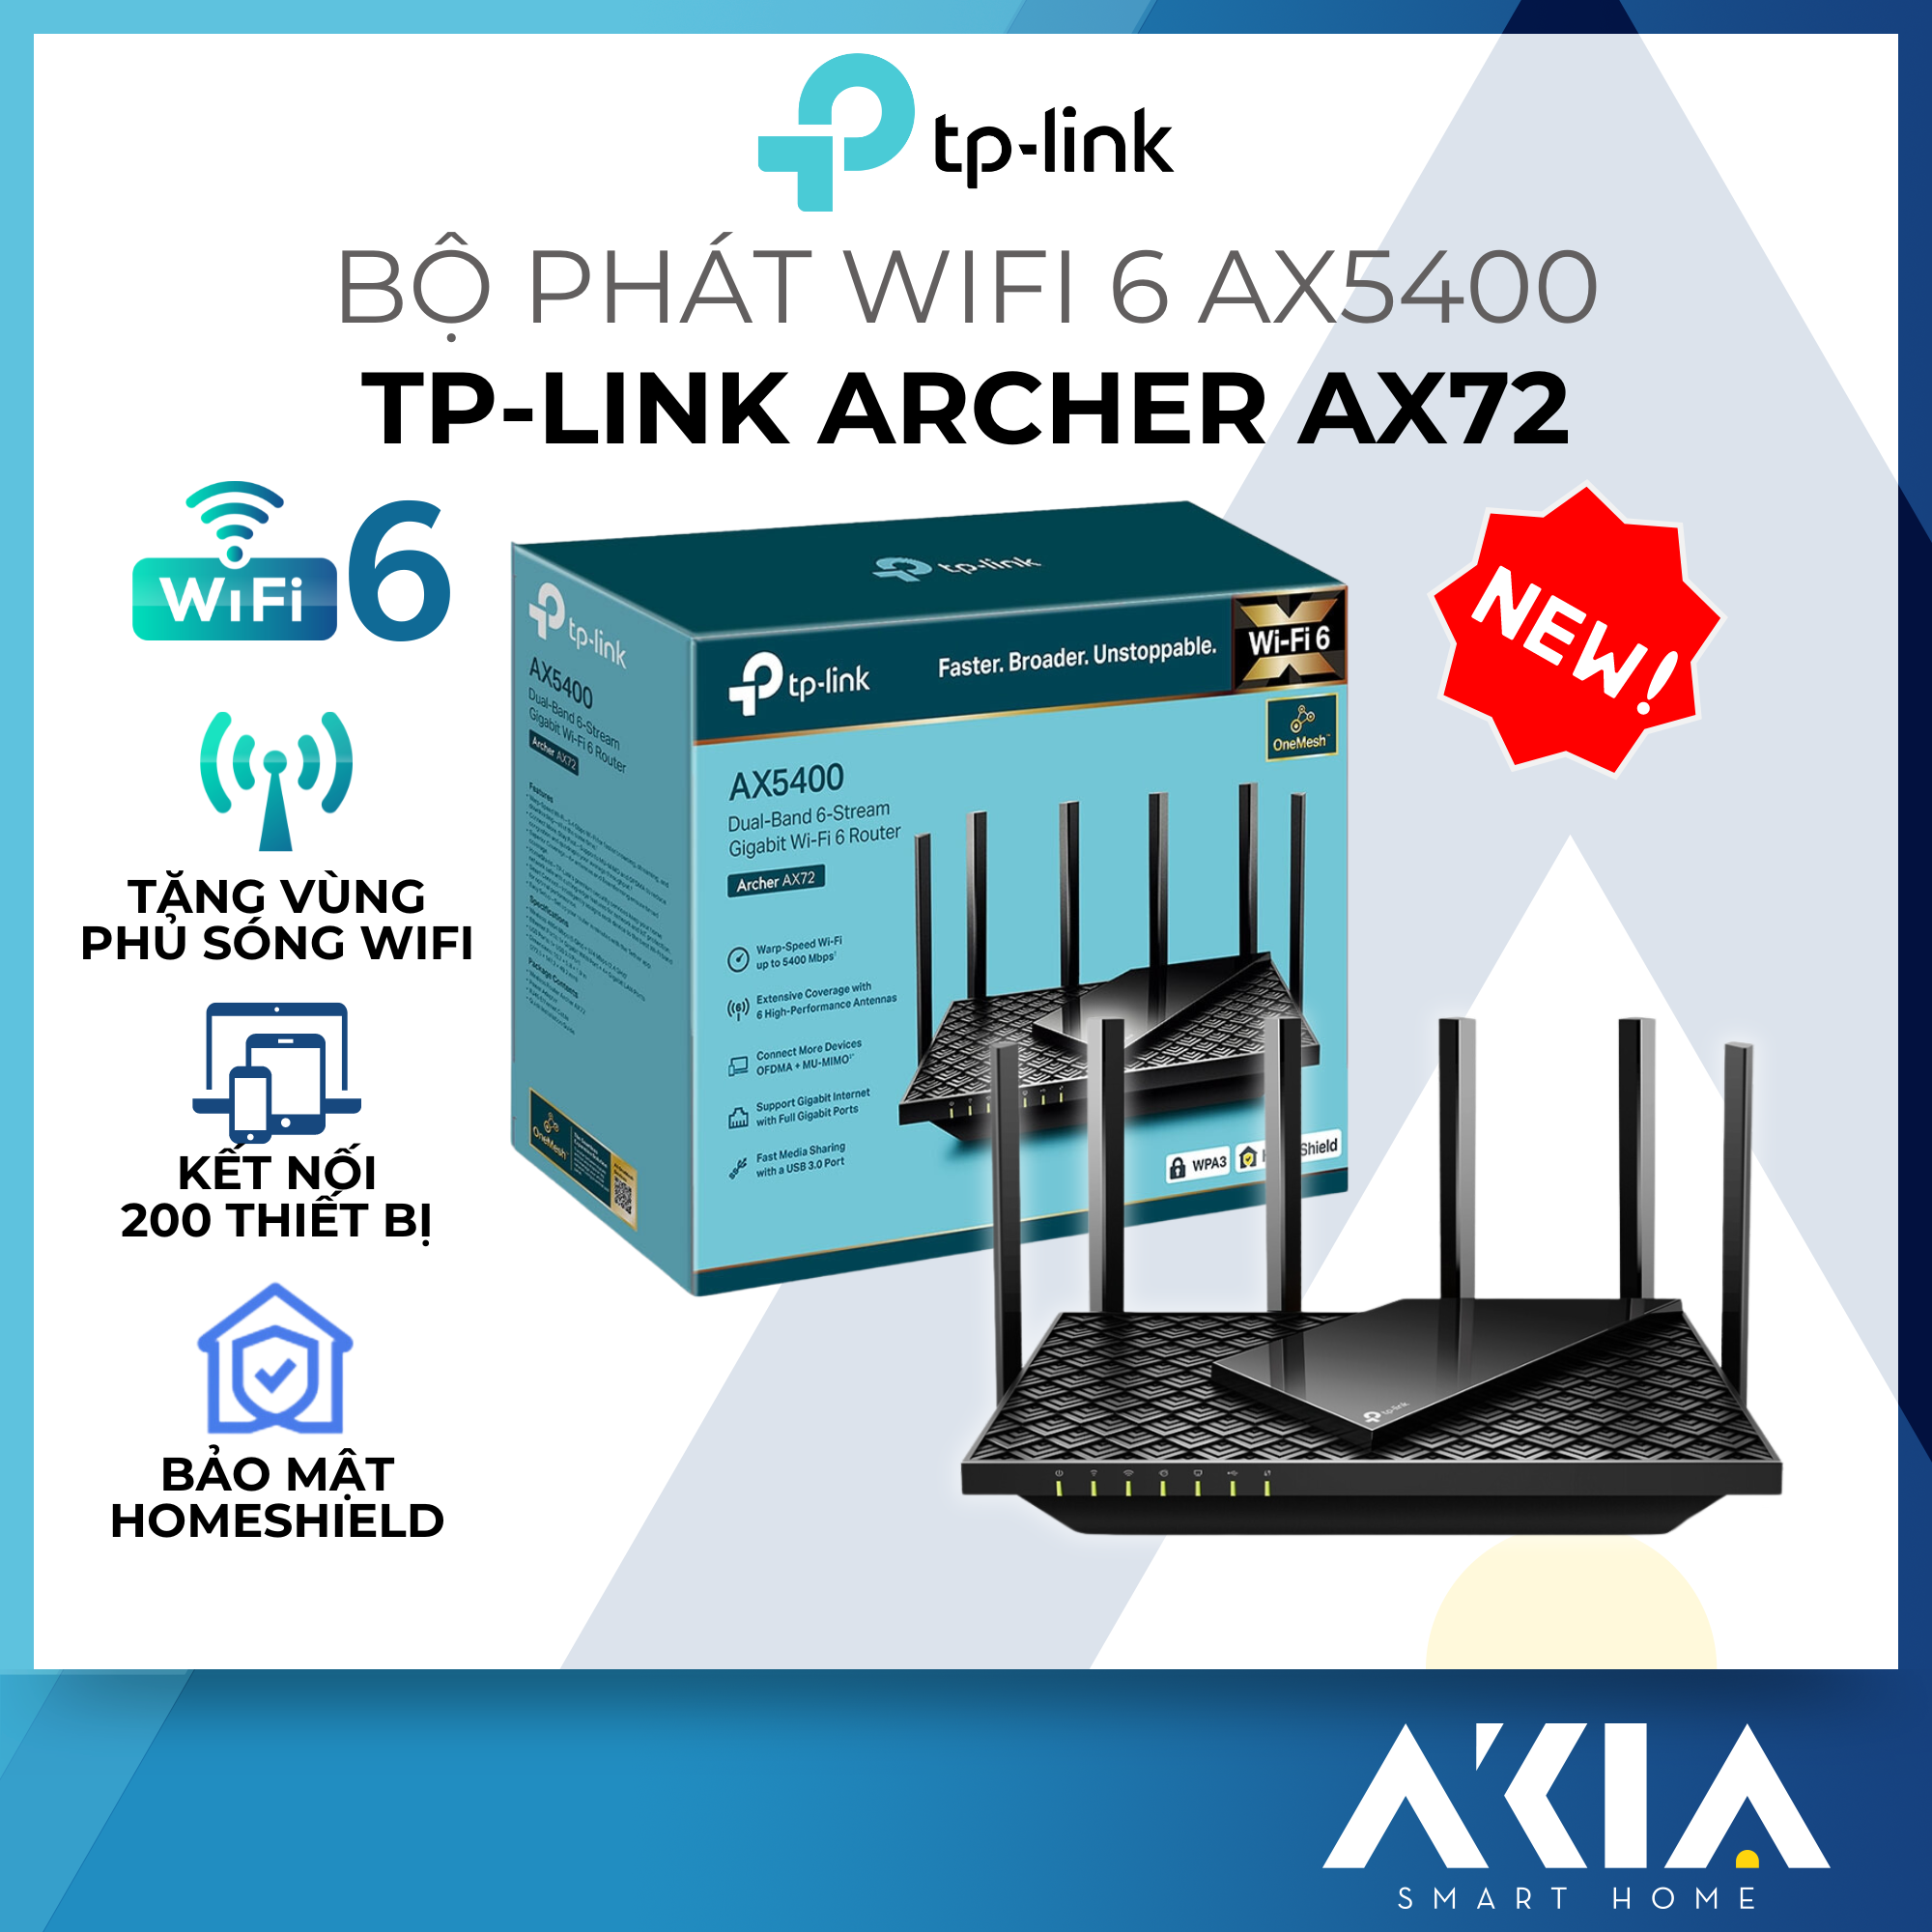 Hình ảnh Bộ Phát Wifi TP-Link Archer AX72 / AX73 - Wifi 6 Gigabit Băng Tần Kép AX5400 - HÀNG CHÍNH HÃNG